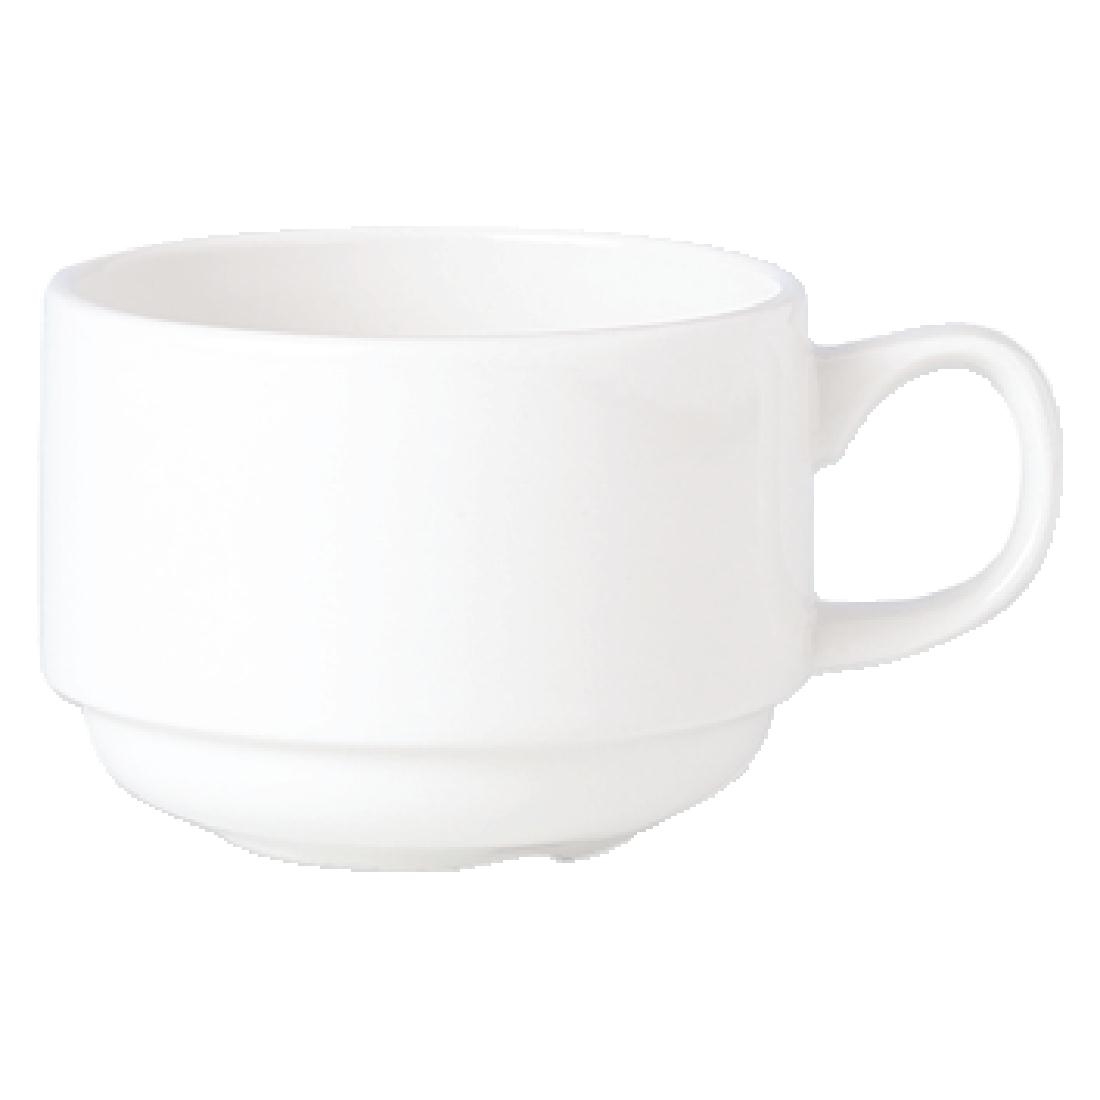 Steelite Simplicity White Stacking Espresso Cups 100ml